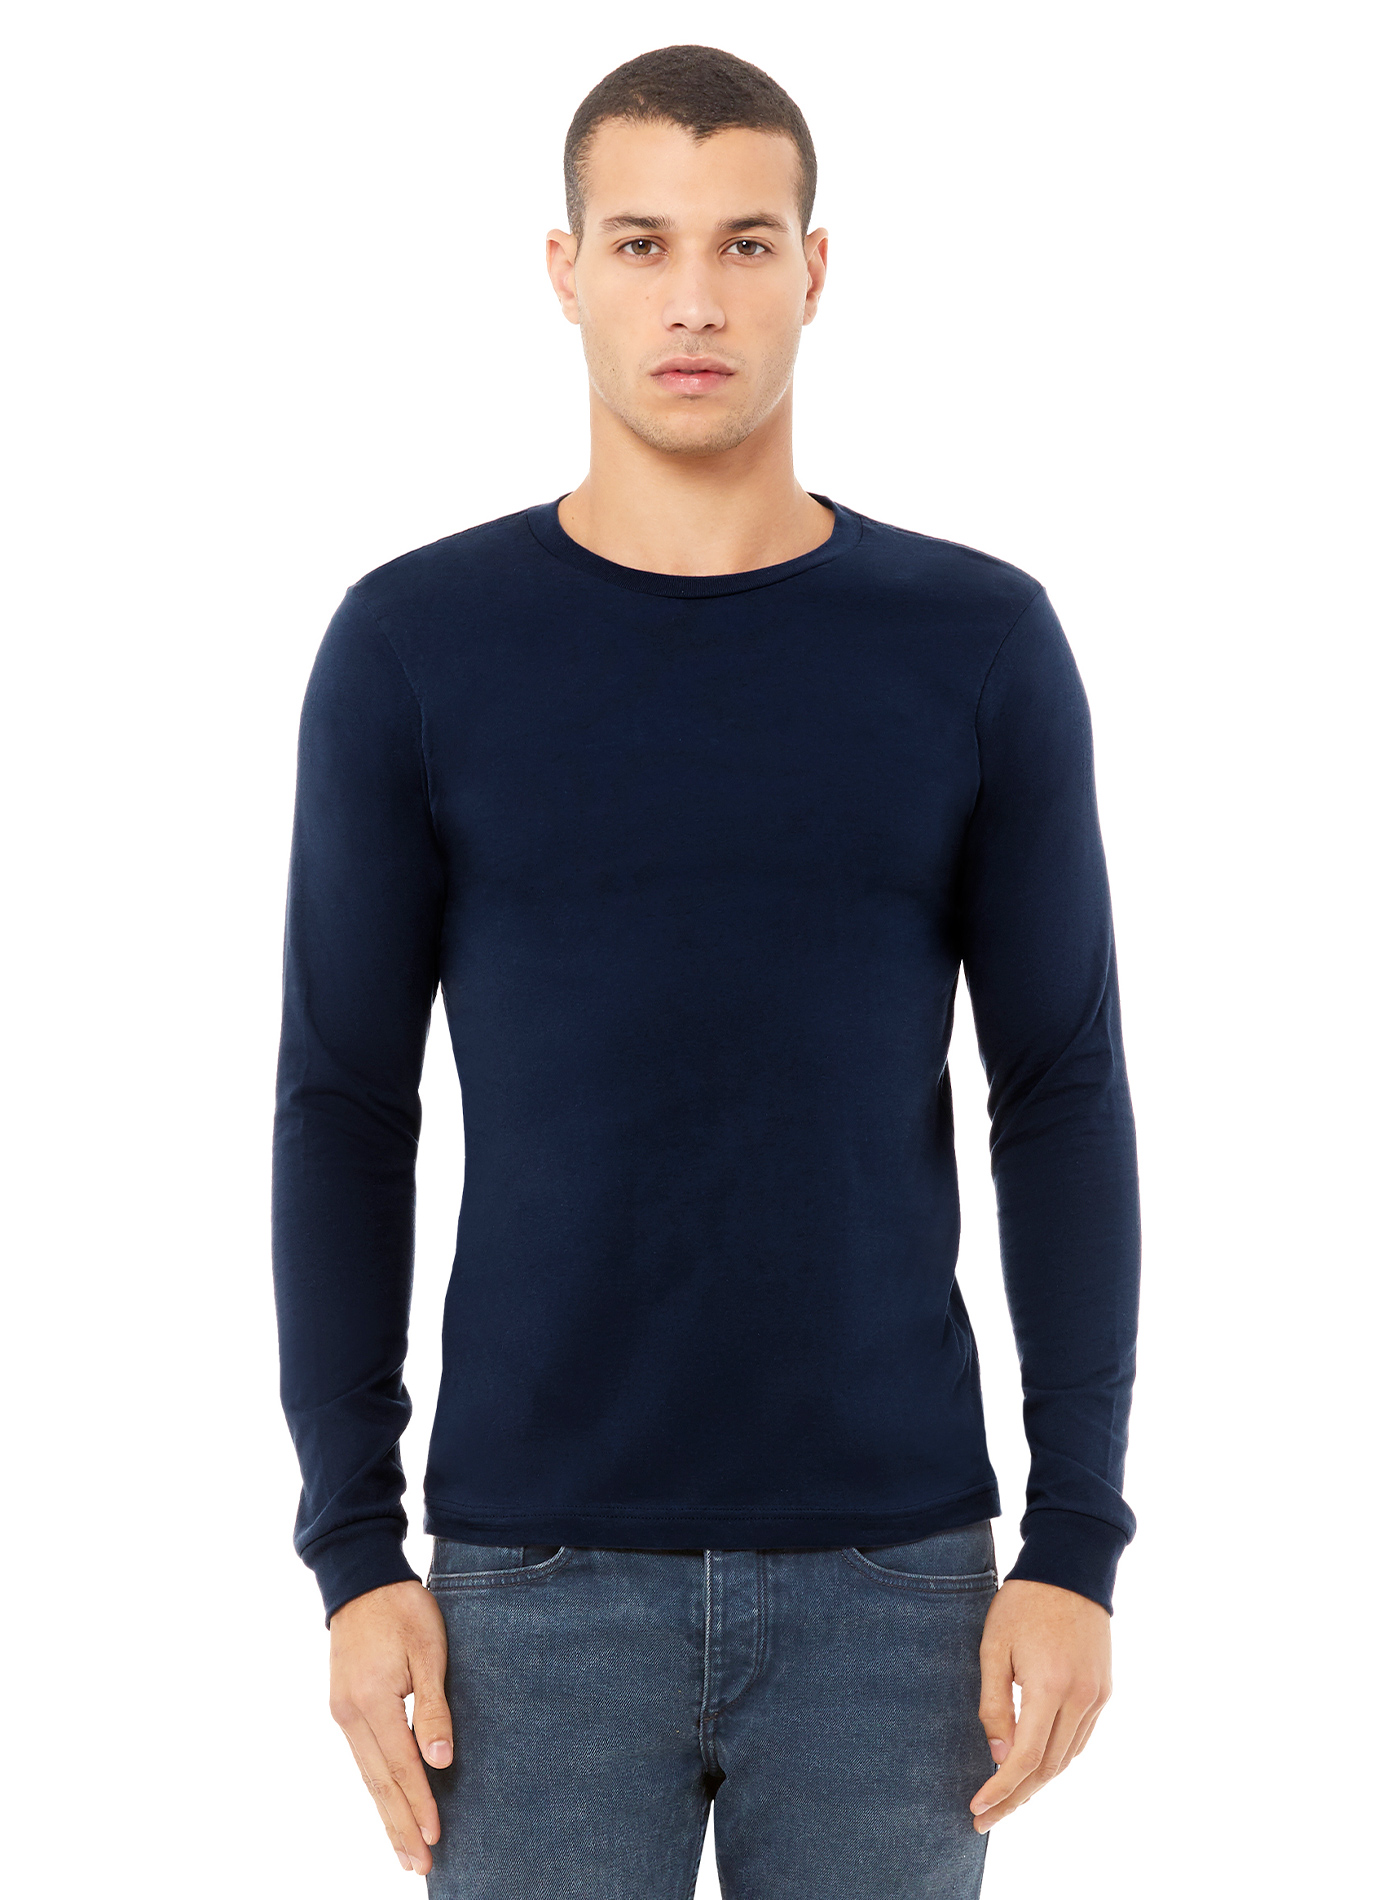 Pánské tričko Bella + Canvas Jersey - Námořnická modrá L